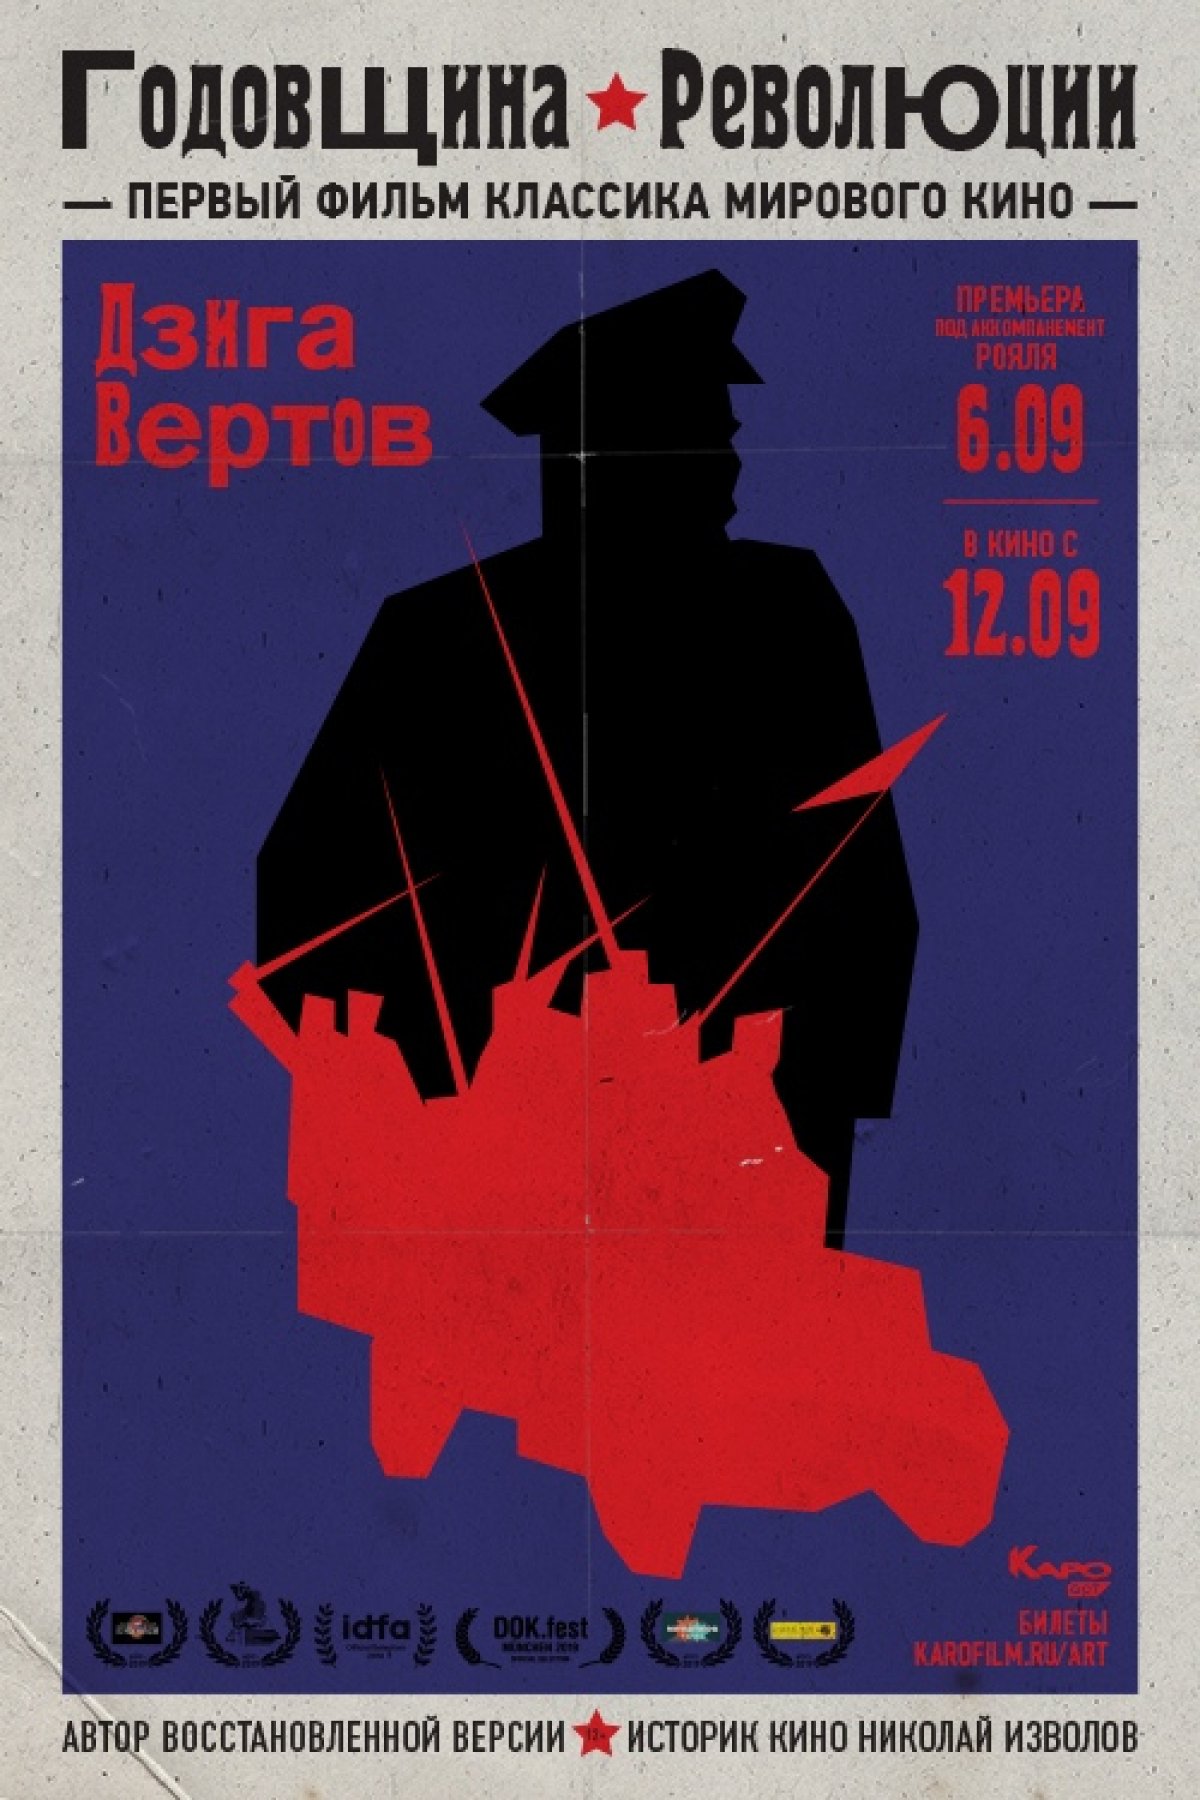 6 сентября в 20:00 в премьерном зале киноцентра «Октябрь» состоится московская премьера восстановленного фильма Дзиги Вертова «Годовщина революции» (1918). Этот шедевр мирового кинематографа представит историк кино